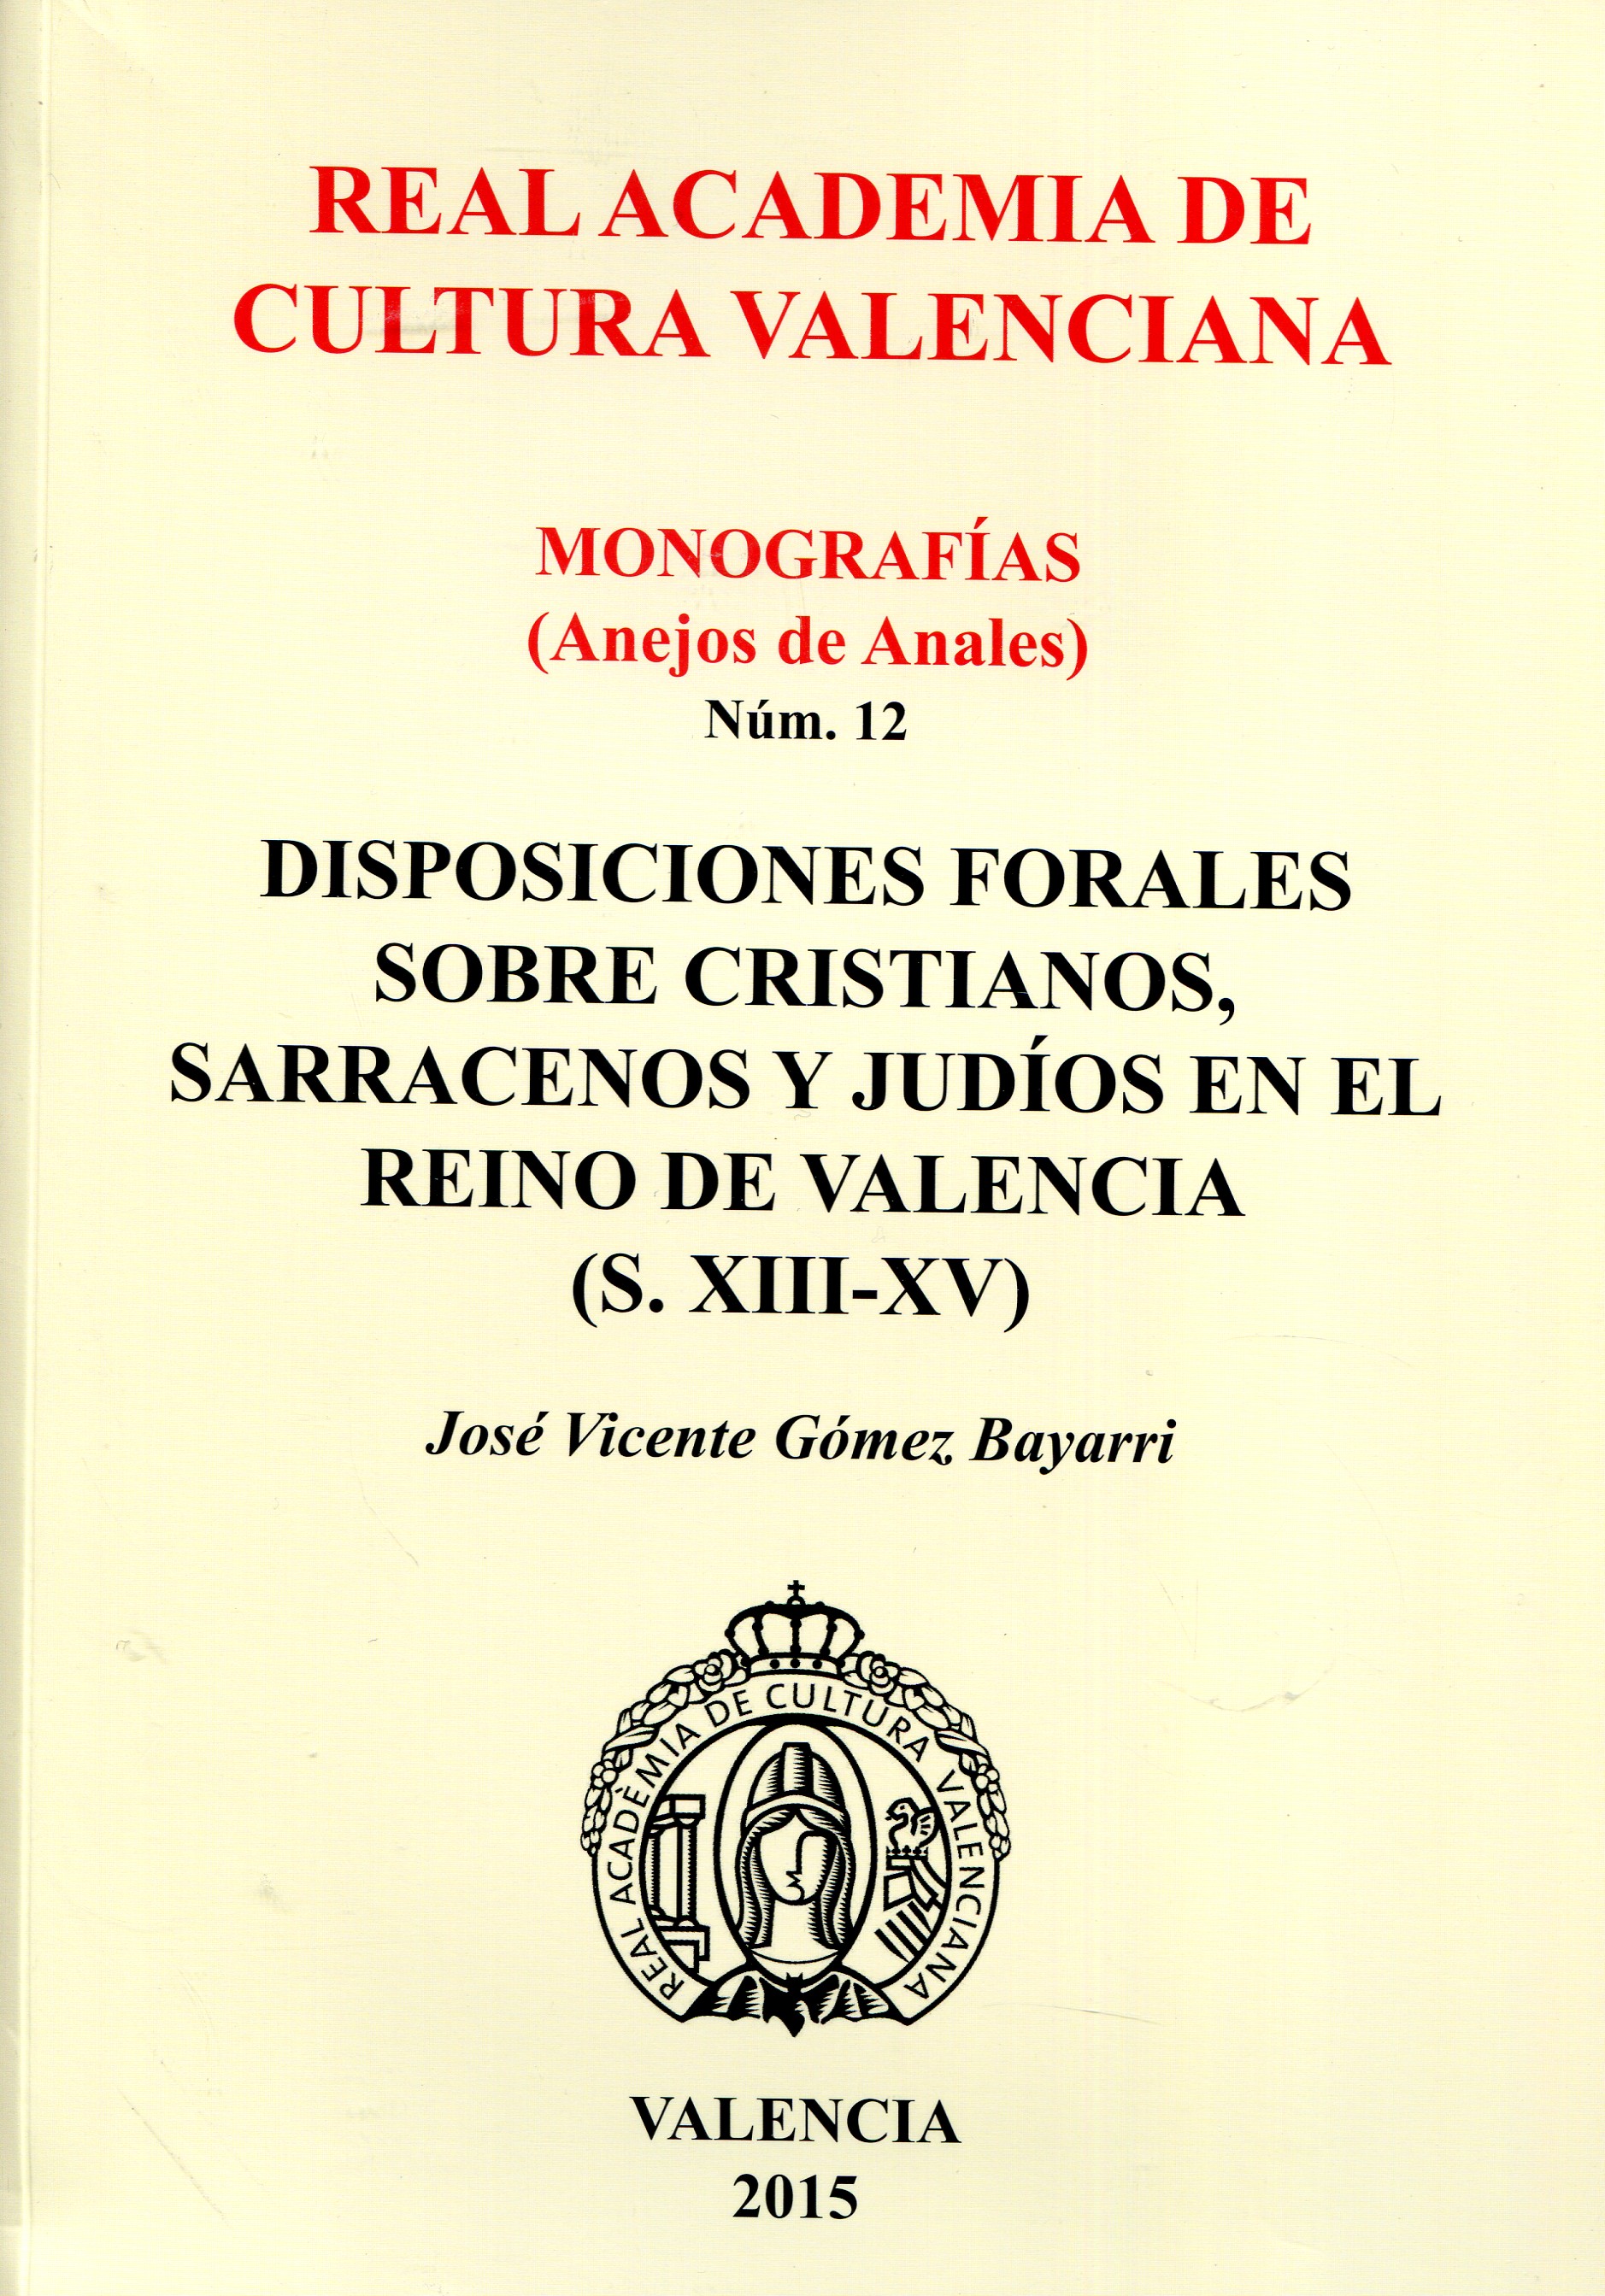 Disposiciones forales sobre cristianos, sarracenos y judíos en el Reino de Valencia